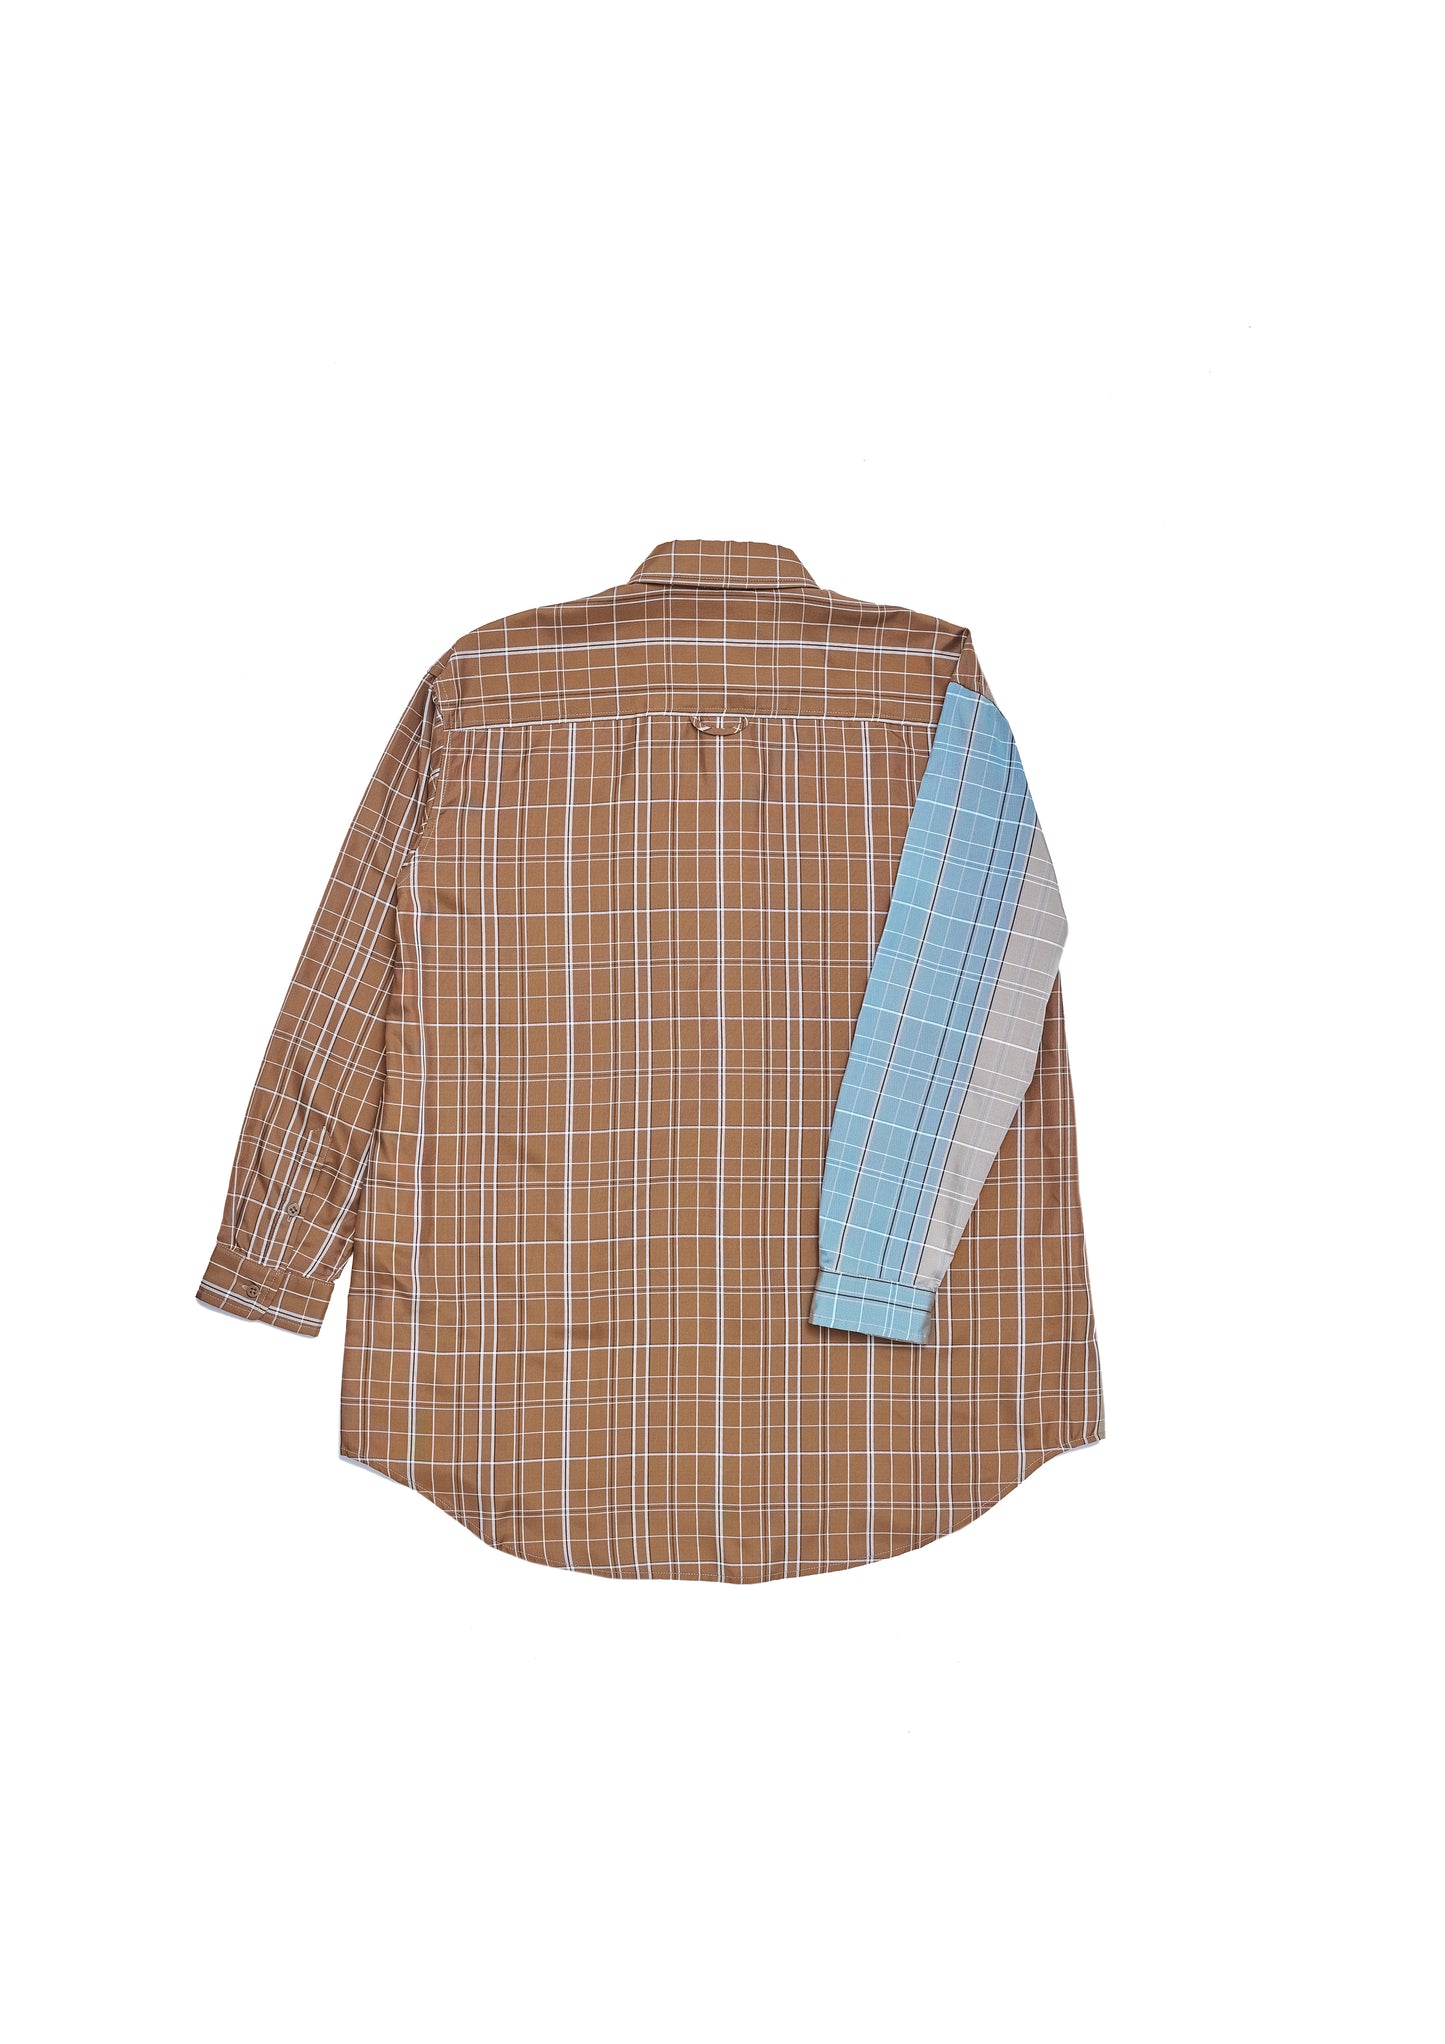 Oversize plaid shirt